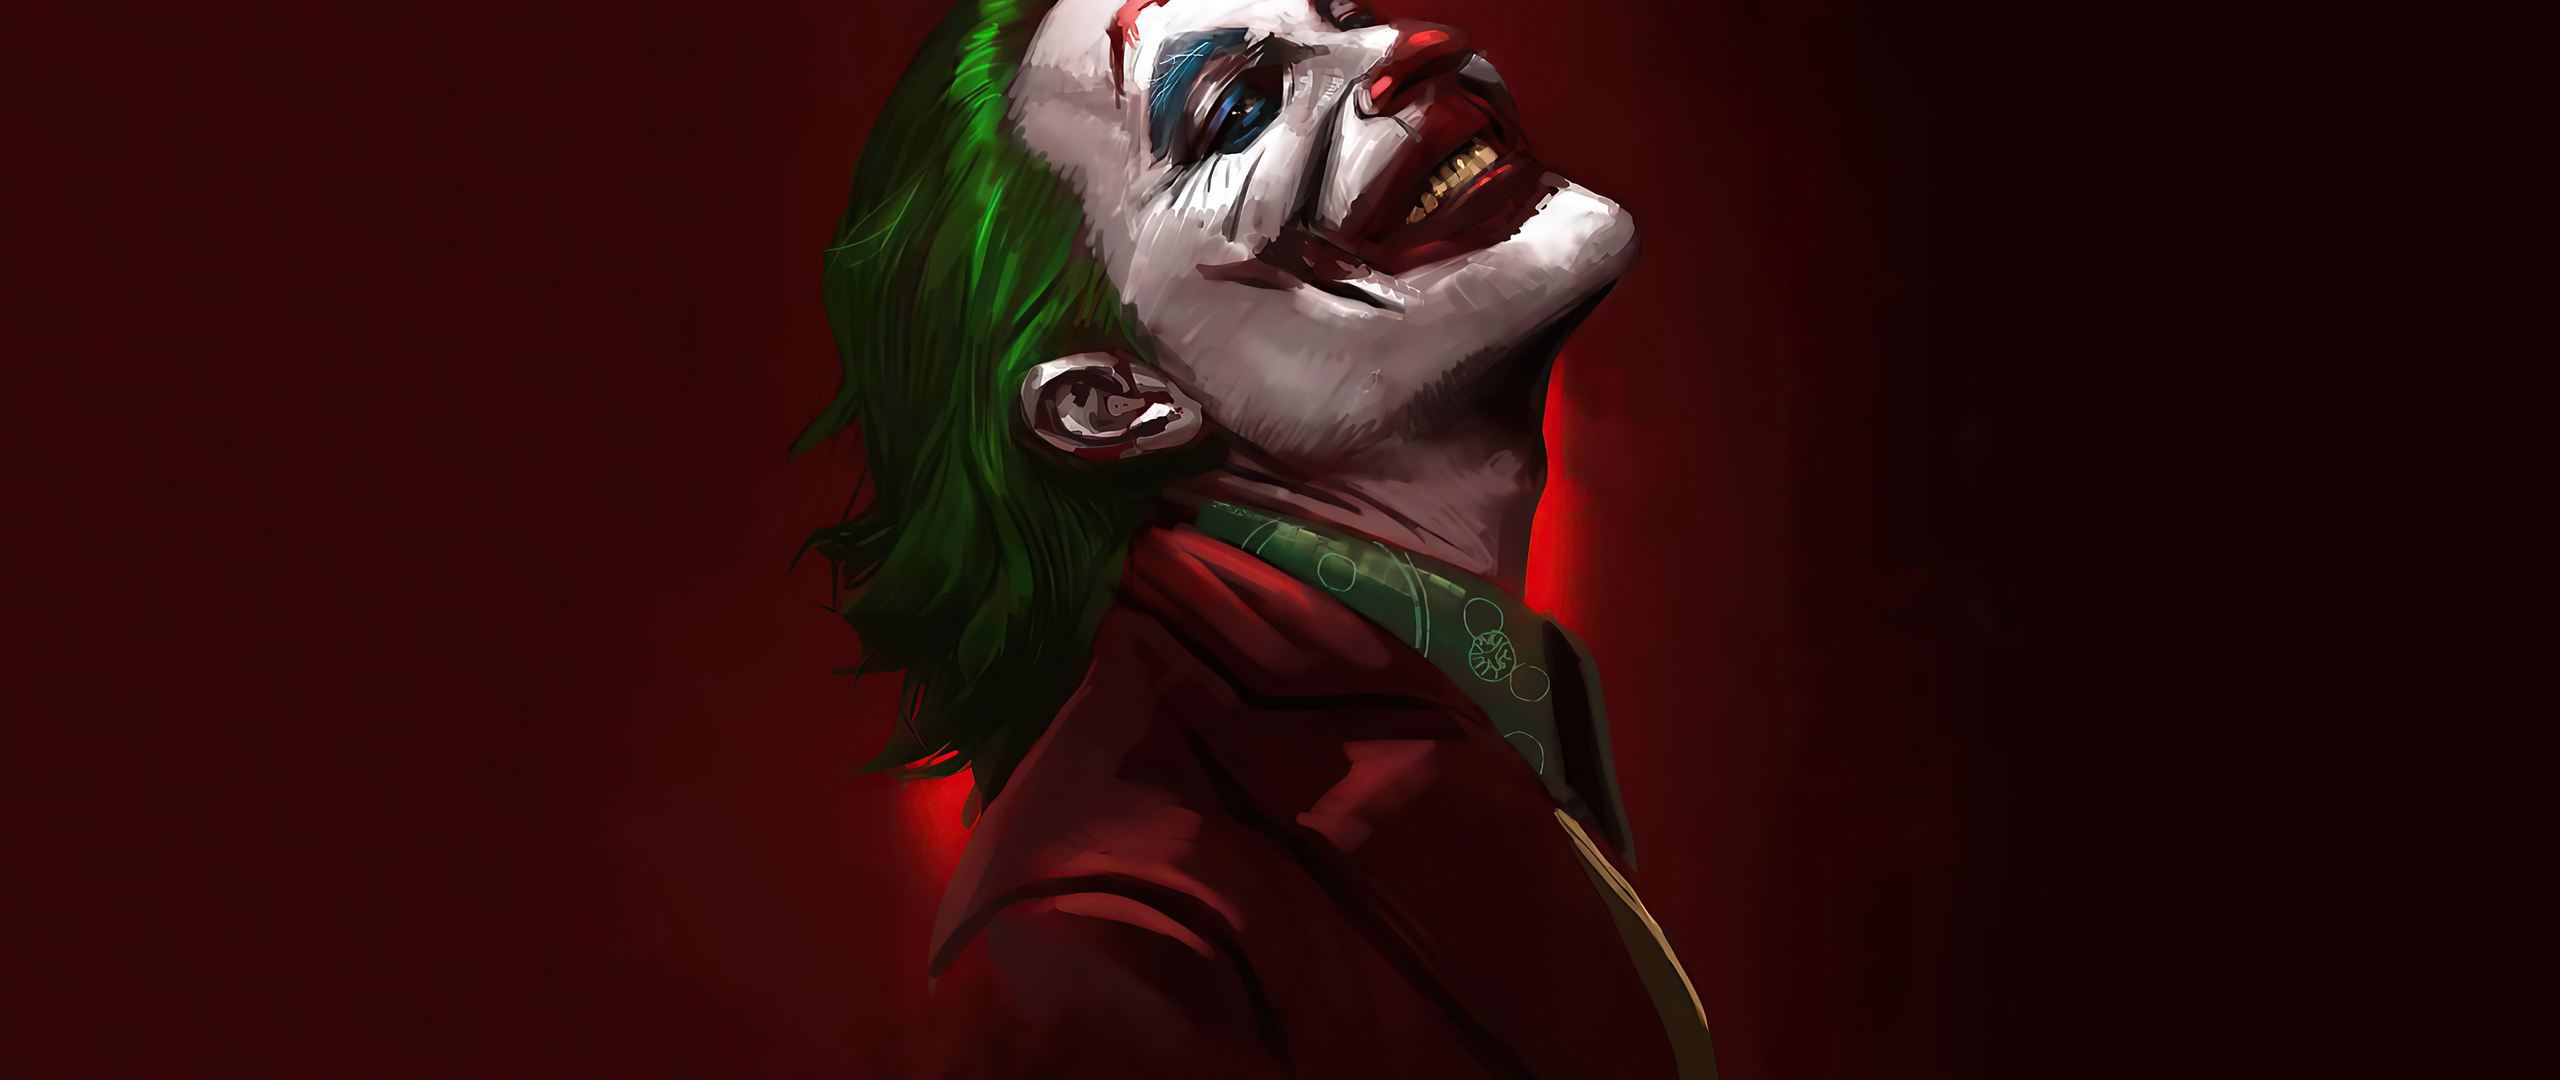 2560x1080 2020 Joker Always Smile 4k